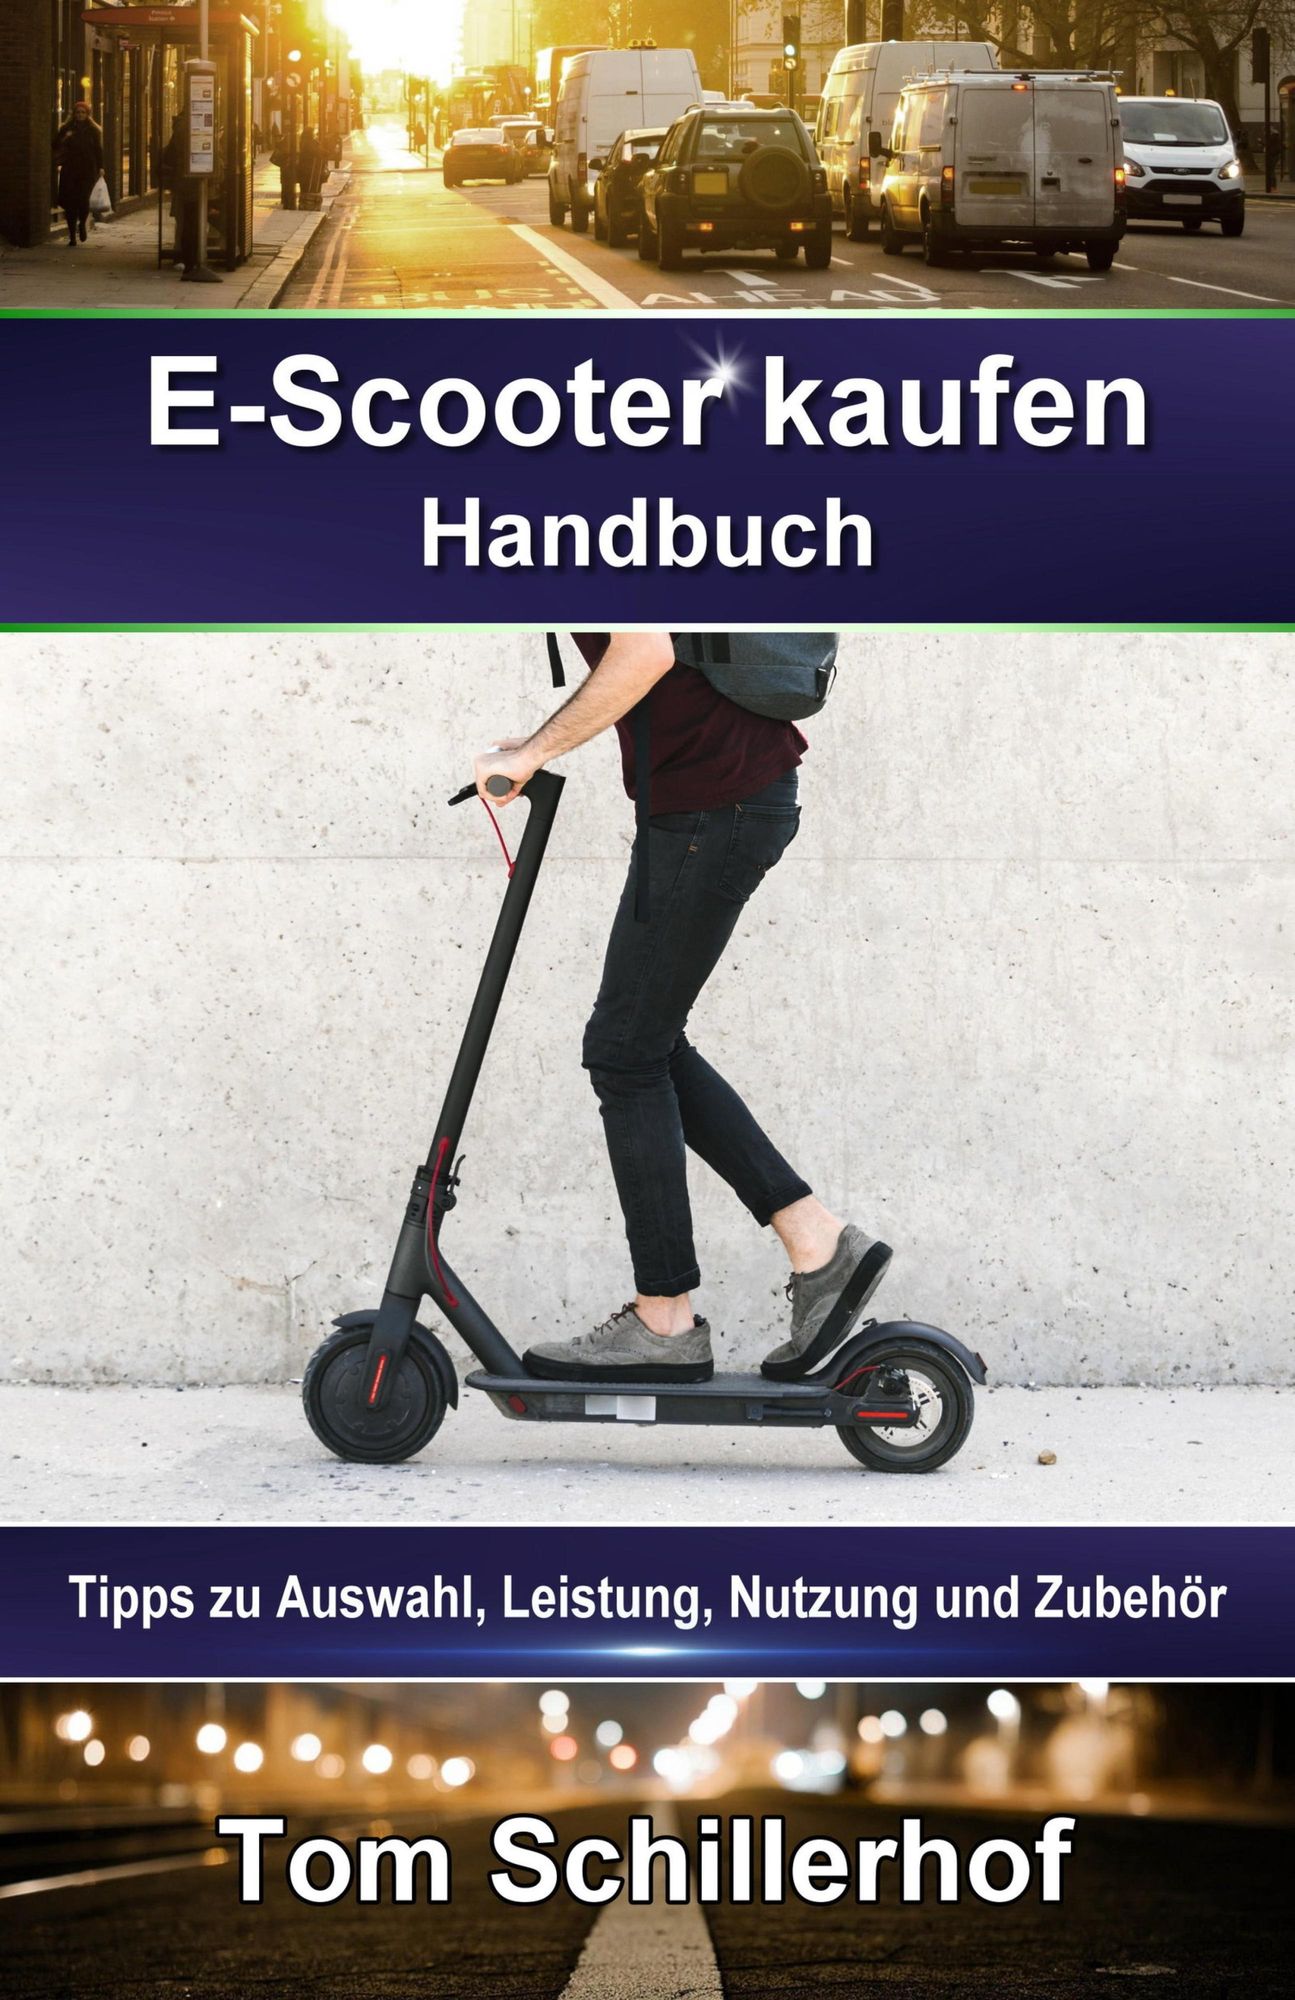 E-Scooter kaufen - Handbuch: Tipps zu Auswahl, Leistung, Nutzung und Zubehör'  von 'Tom Schillerhof' - eBook